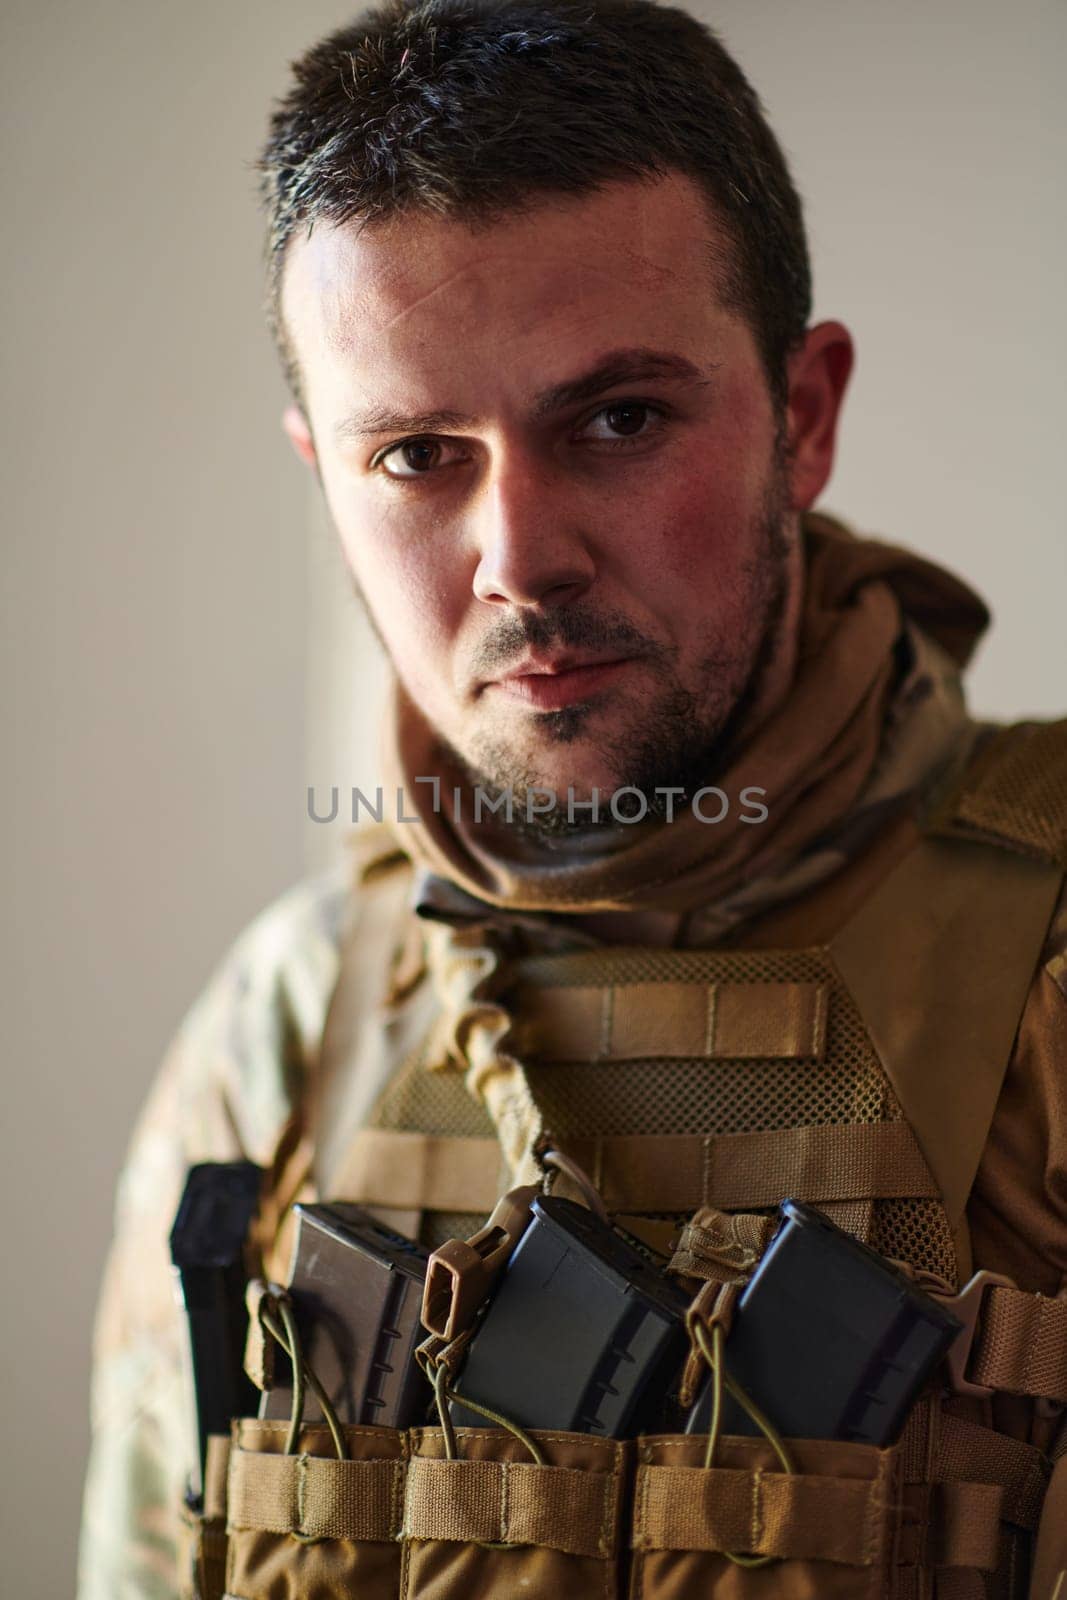 Modern warfare soldier portrait in urban environment by dotshock